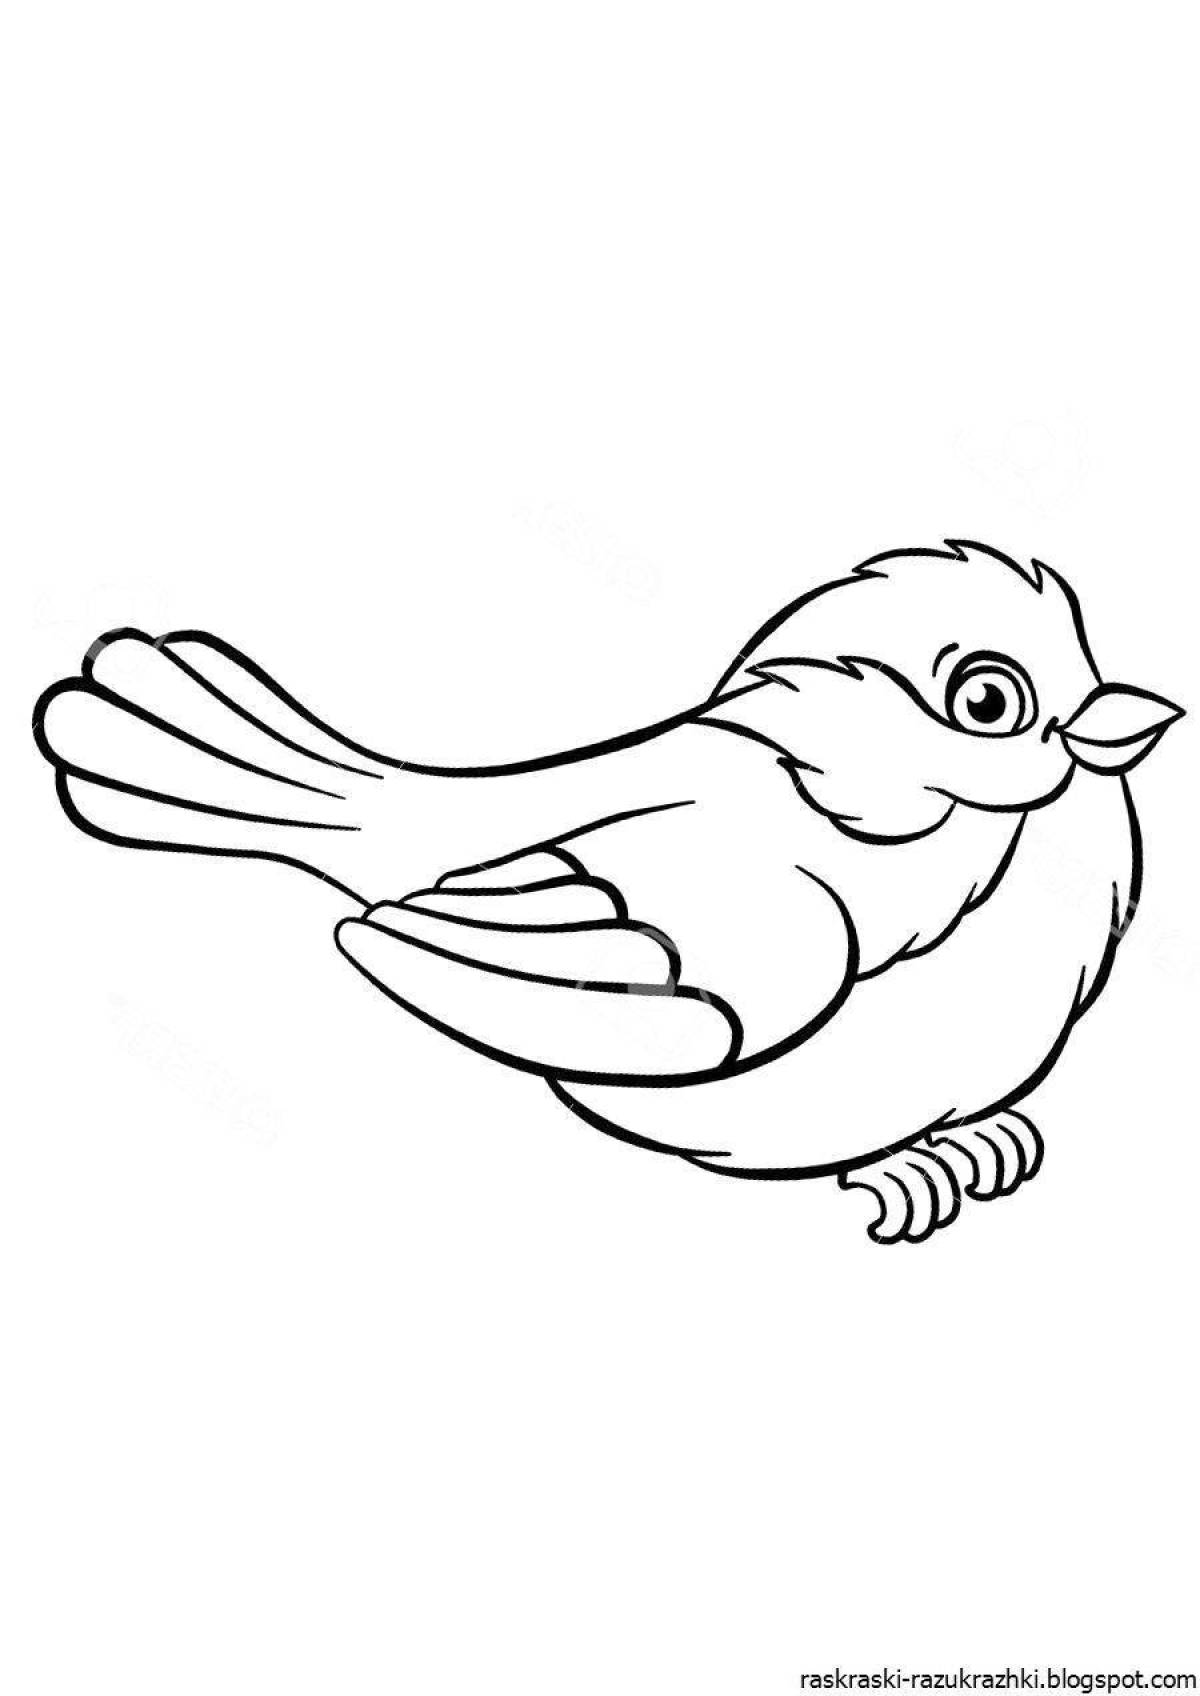 Распечатать картинку птицы для детей